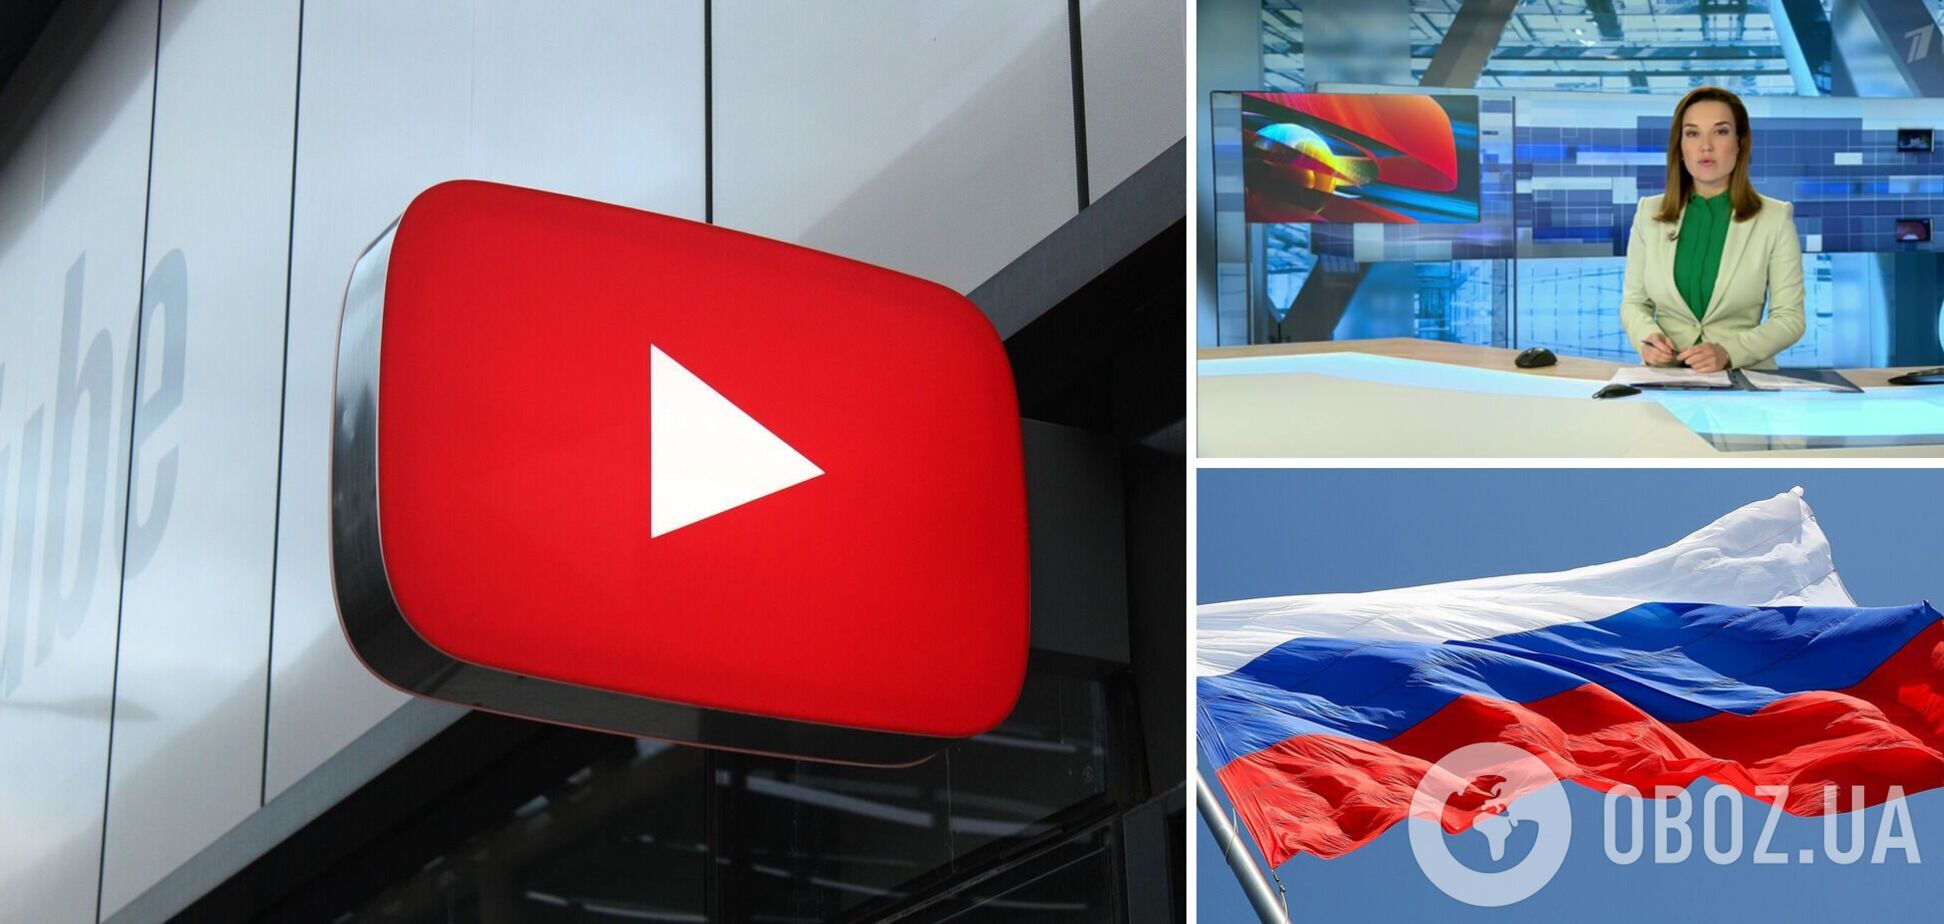 Пропагандистские каналы РФ больше не показывает YouTube в Украине